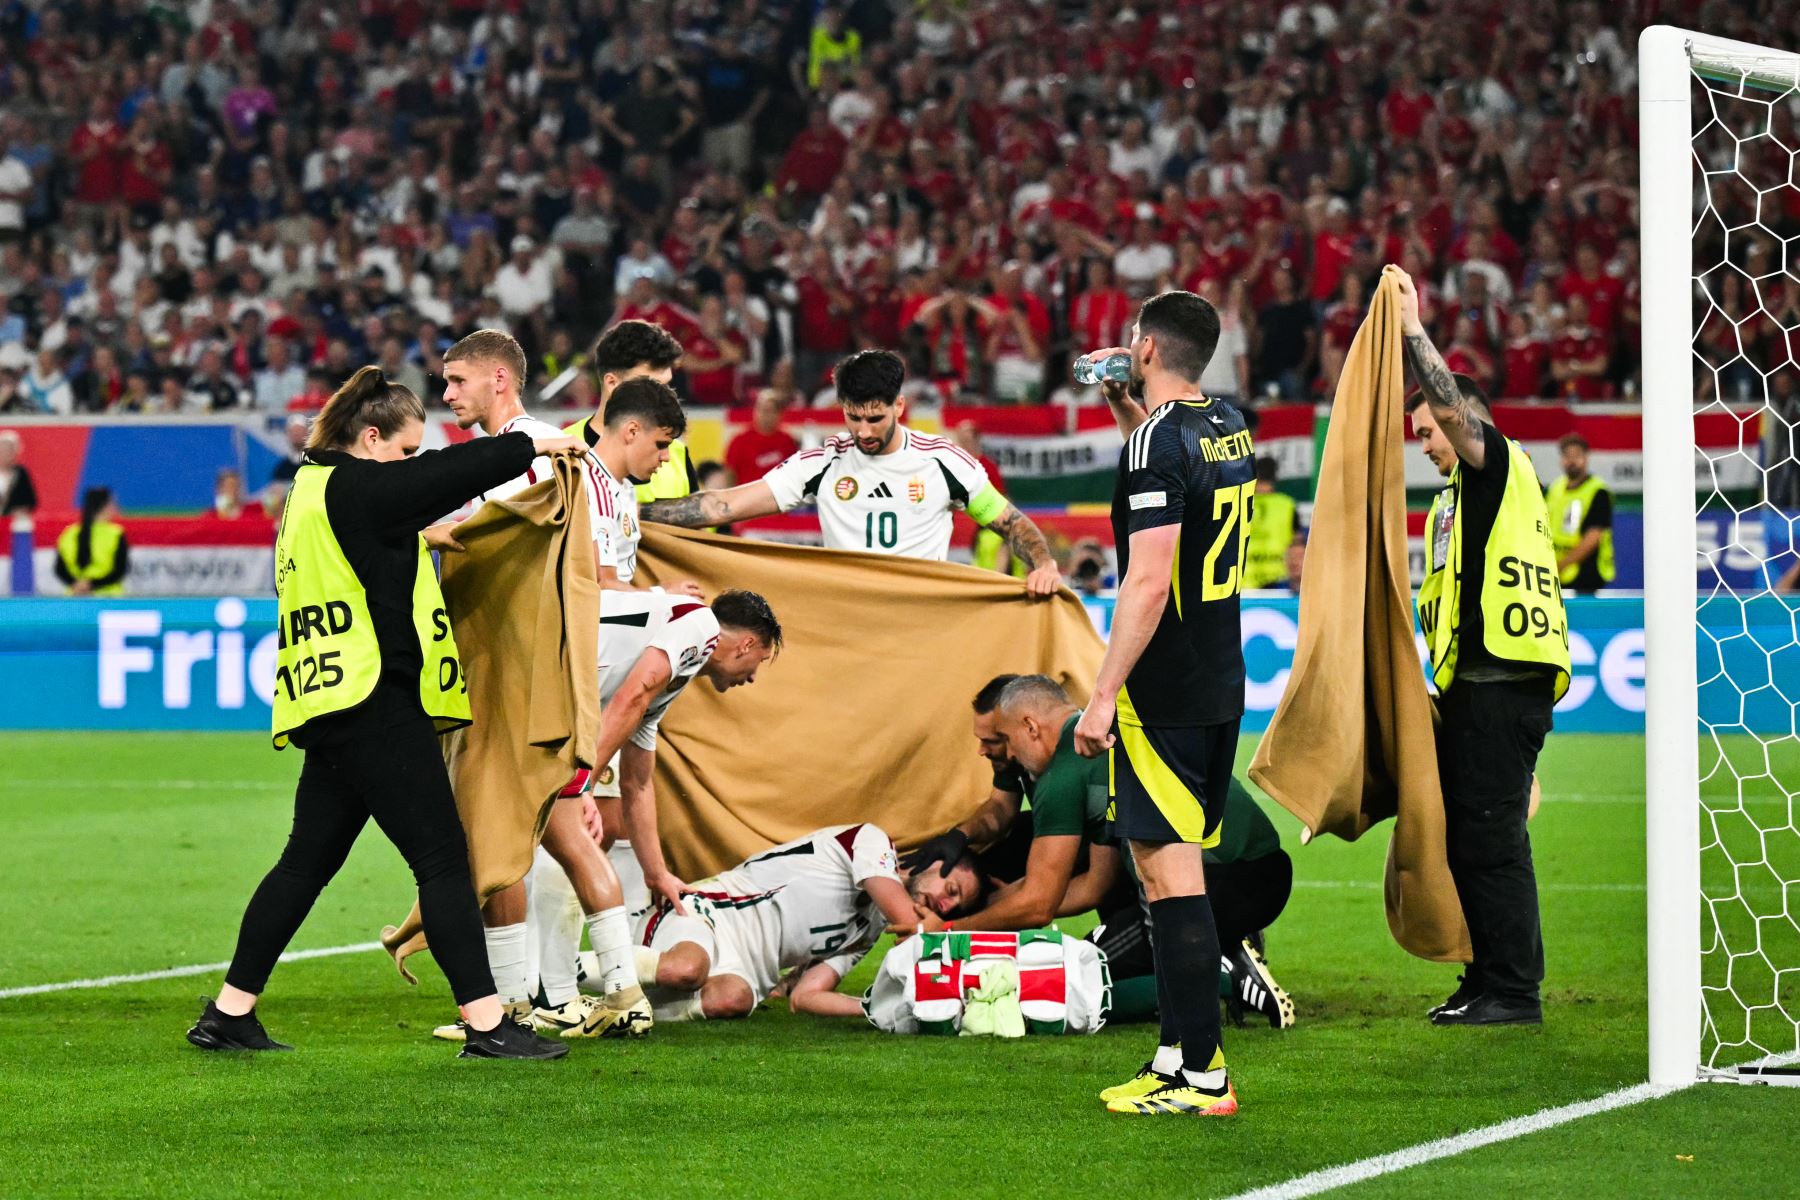 Los jugadores y los comisarios sostienen un paño mientras el delantero húngaro  Barnabas Vargas cae después de una colisión durante el partido de fútbol del Grupo A de la UEFA Euro 2024 entre Escocia y Hungría en el Stuttgart Arena en Stuttgart.
Foto: AFP